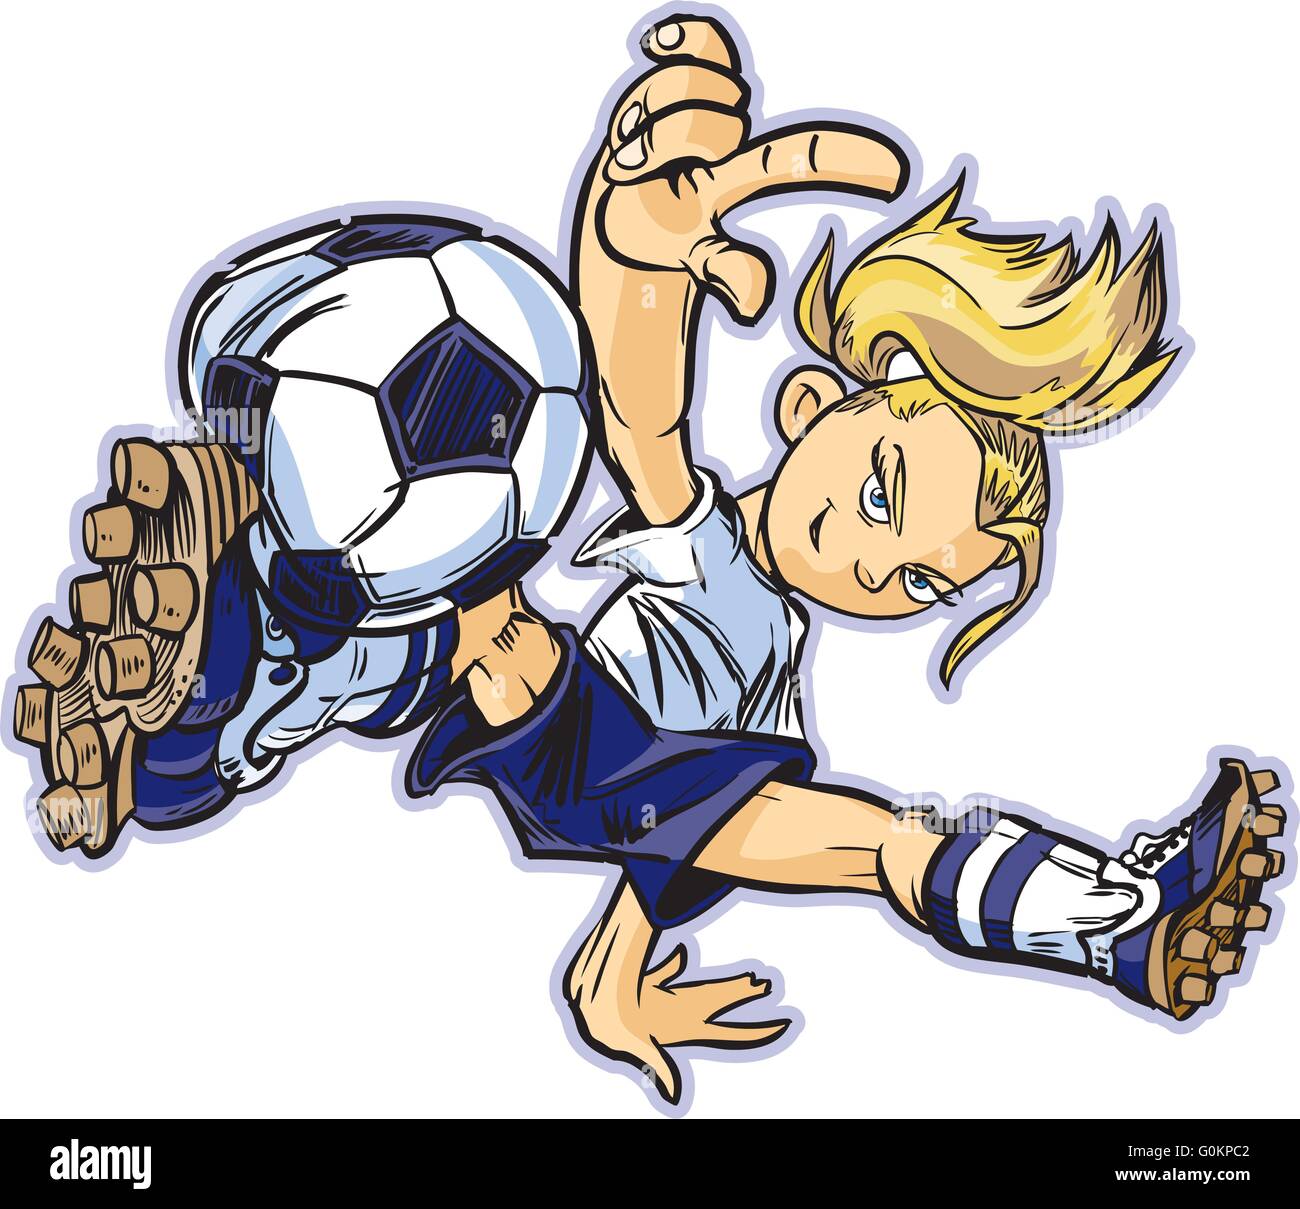 Vektor Clip Art Karikatur eines kaukasischen Mädchens mit einem Breakdance bewegen, Fußball zu spielen. Stock Vektor